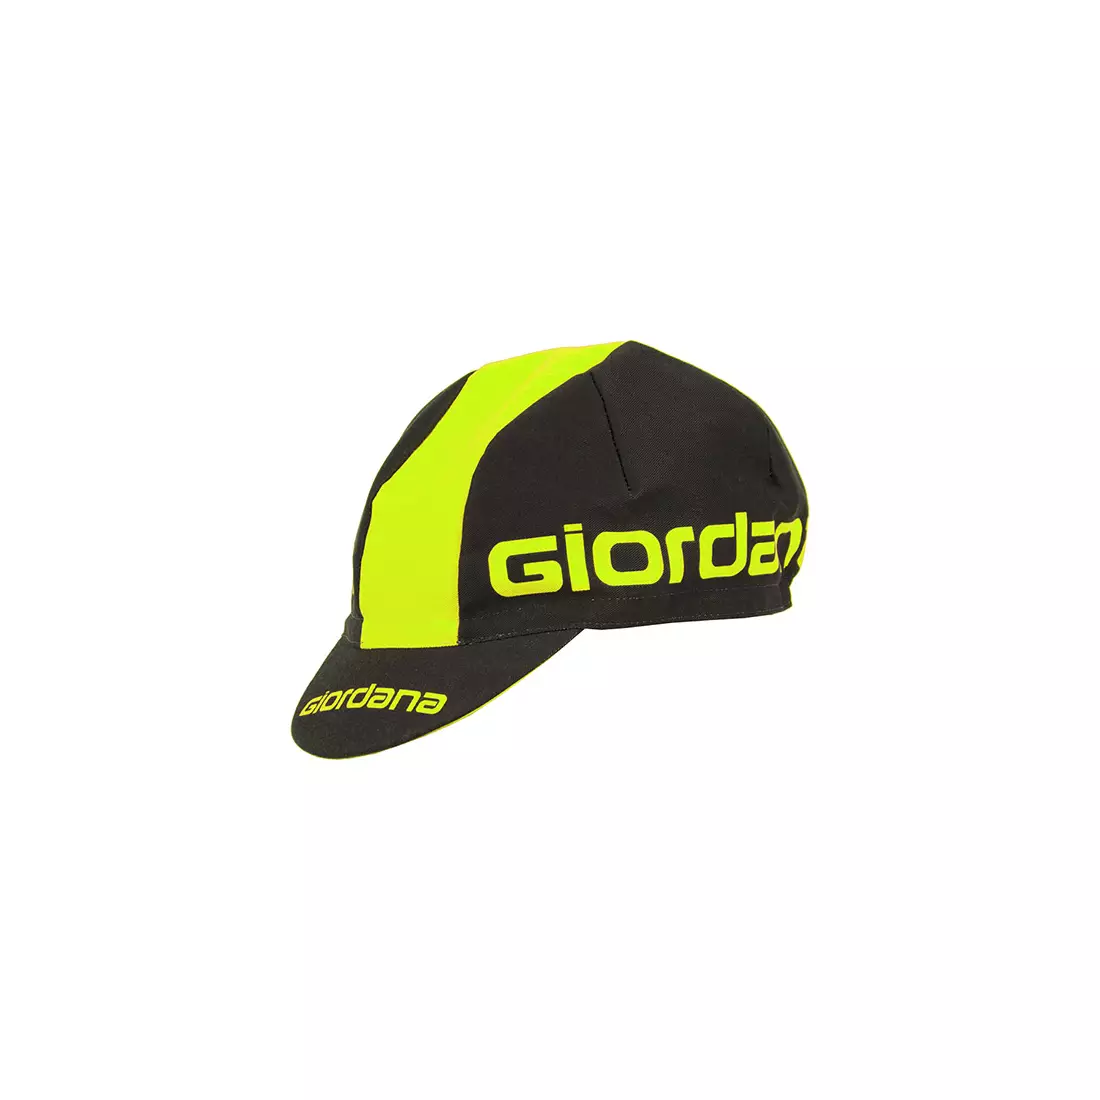 GIORDANA SS18 cycling cap - Giordana Logo - Black/Fluo Yellow GI-S5-COCA-GIOR-BKYL one size